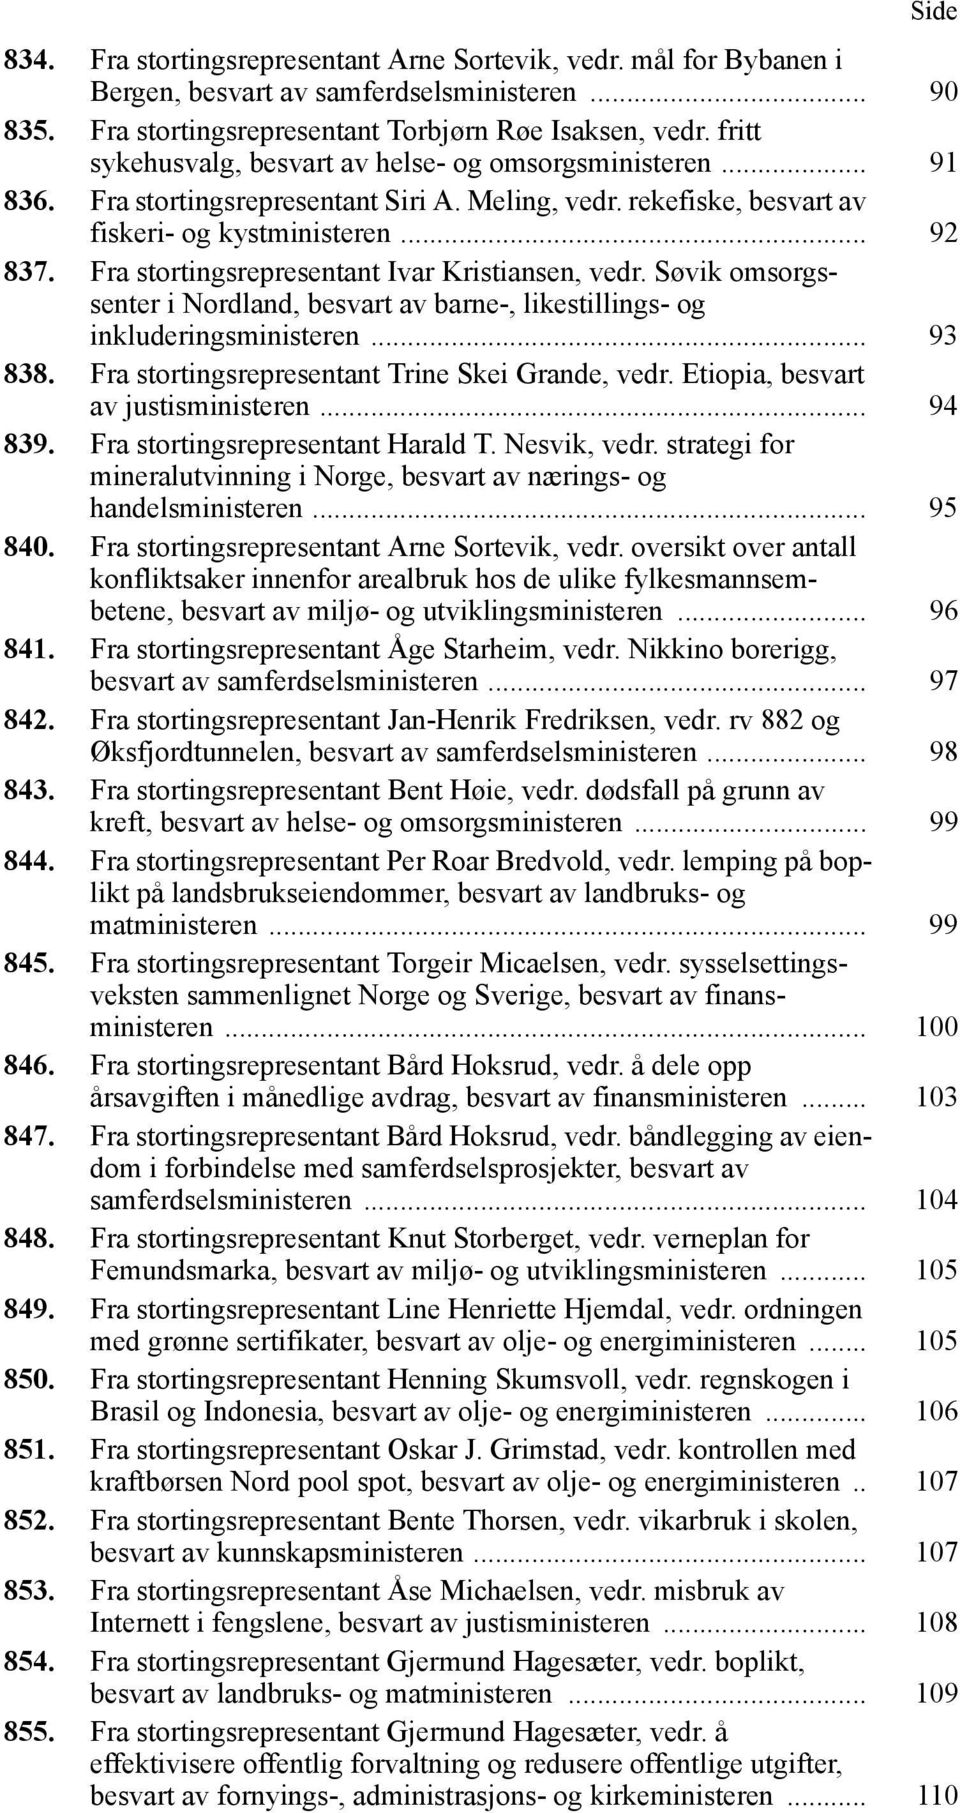 Fra stortingsrepresentant Ivar Kristiansen, vedr. Søvik omsorgssenter i Nordland, besvart av barne-, likestillings- og inkluderingsministeren... 93 838.